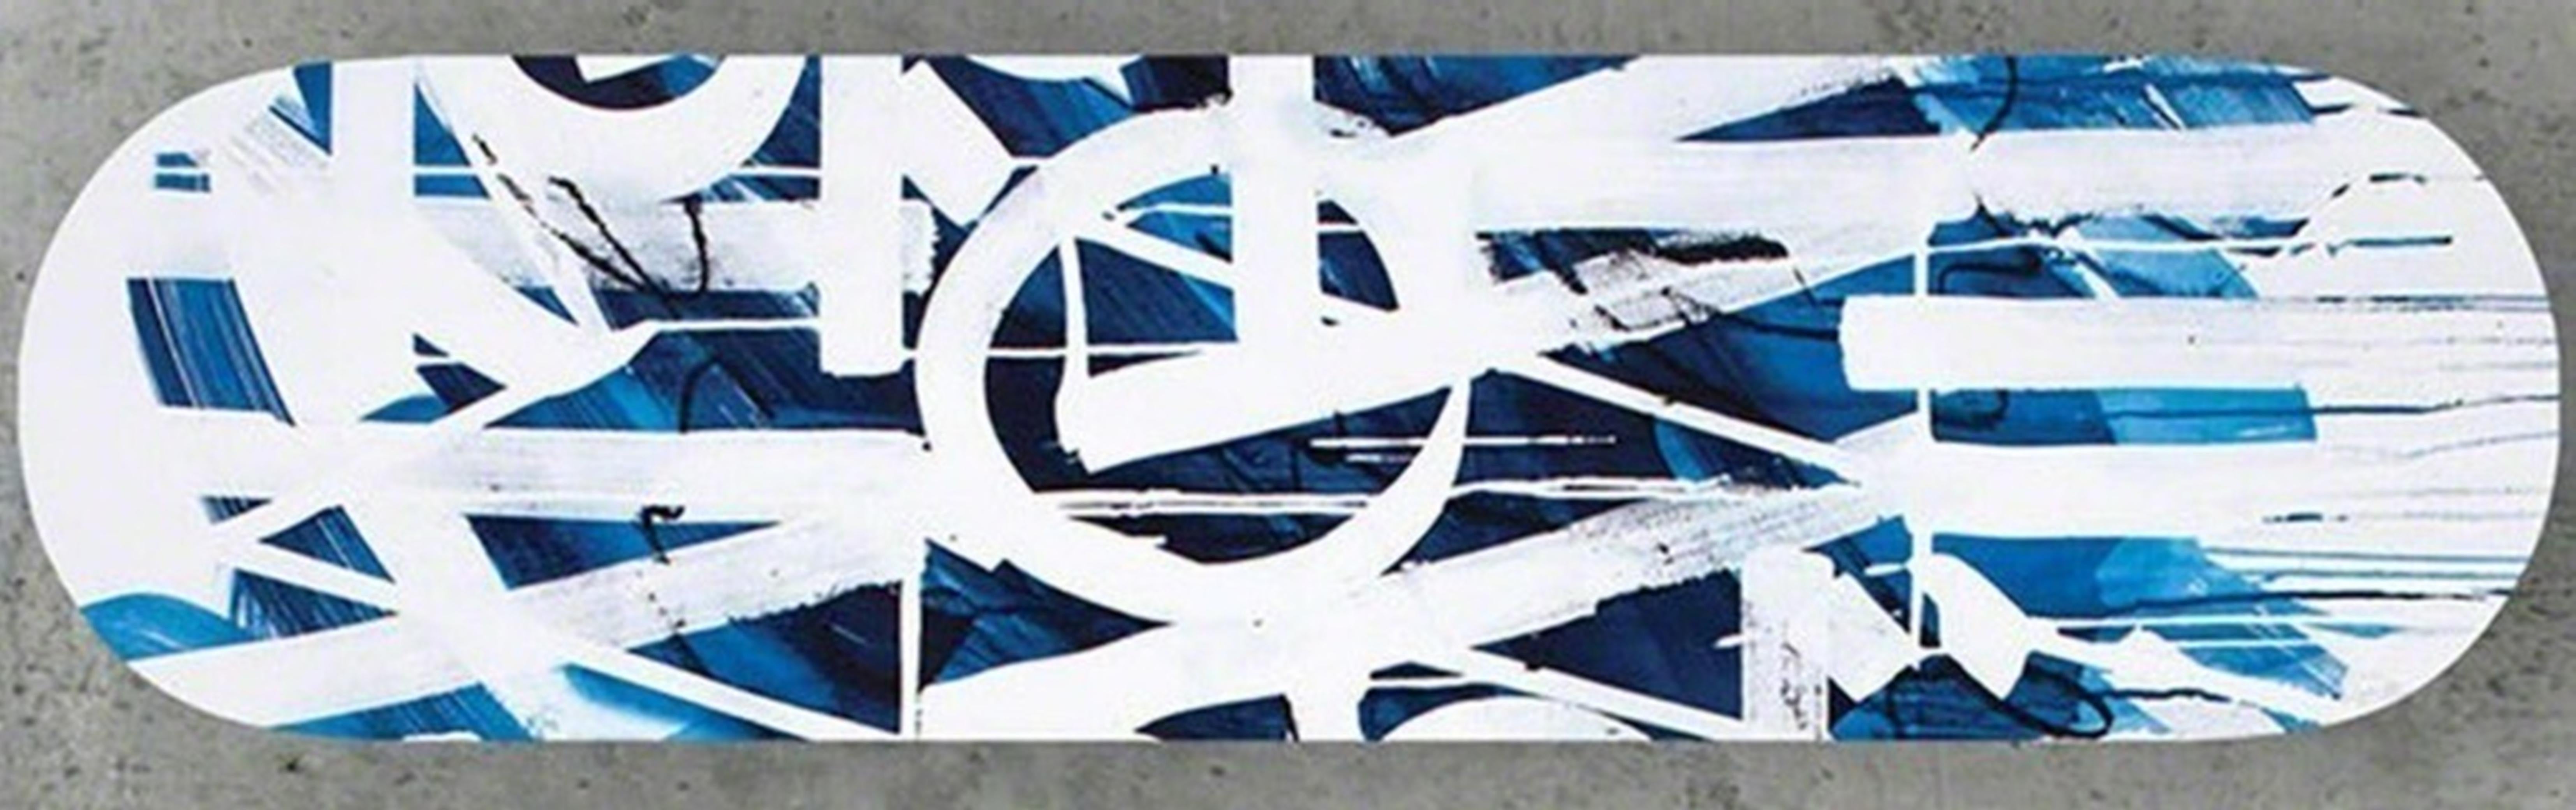 RETNA
Skate deck (bleu avec dos vert) avec COA embossé, signé à la main par RETNA, 2018
Sérigraphie en édition limitée sur skatedeck Maplewood avec dos bleu. Accompagné d'un certificat d'authenticité signé à la main sur papier à en-tête gaufré.
32 ×